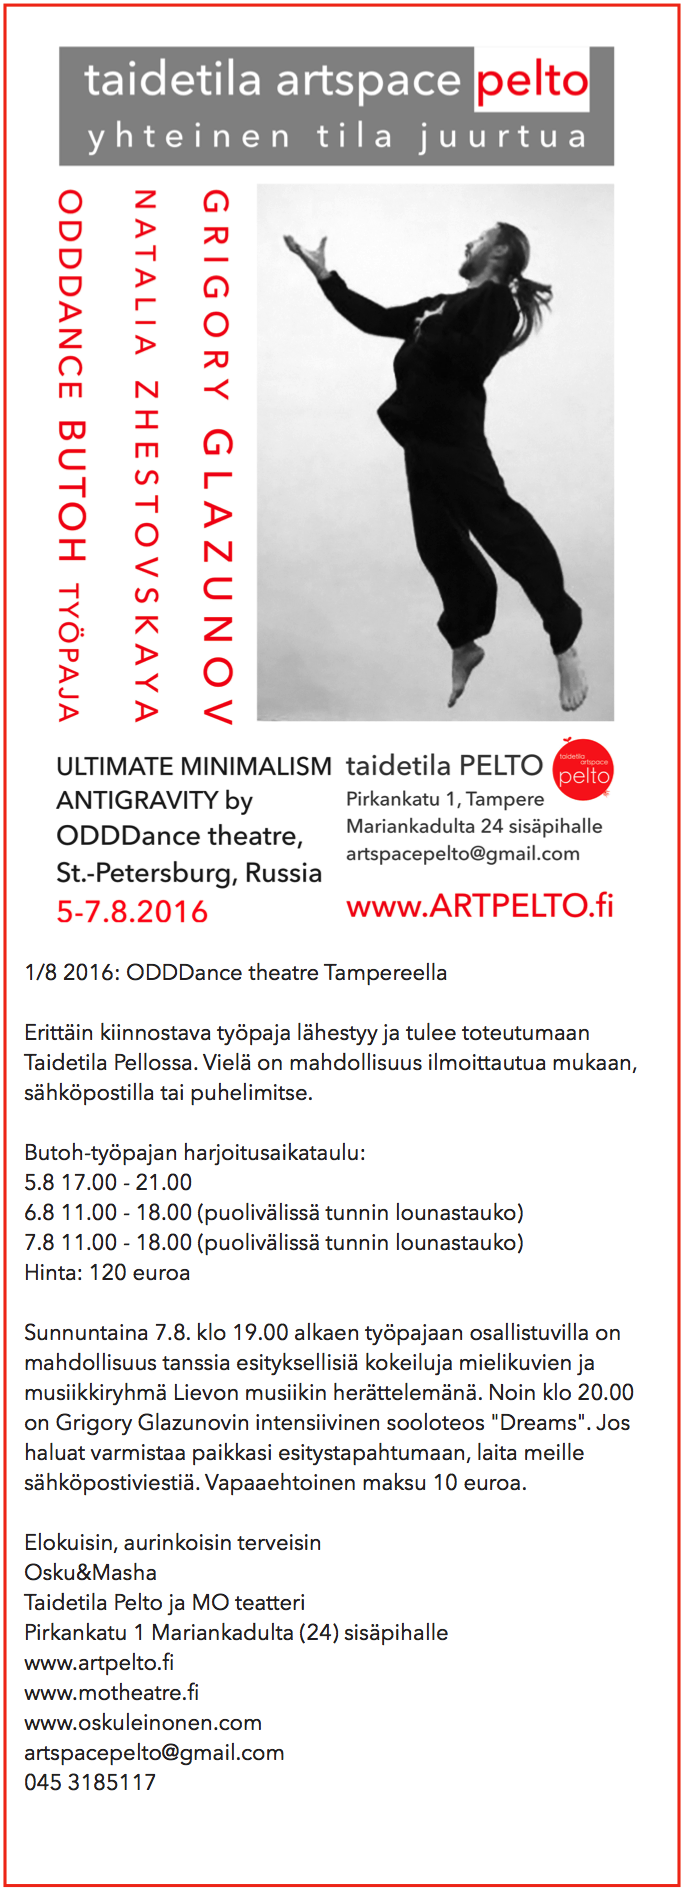 Uutiskirje Taidetila Pelto 01/08/2016 ODDDance theatre Taidetila Pellossa